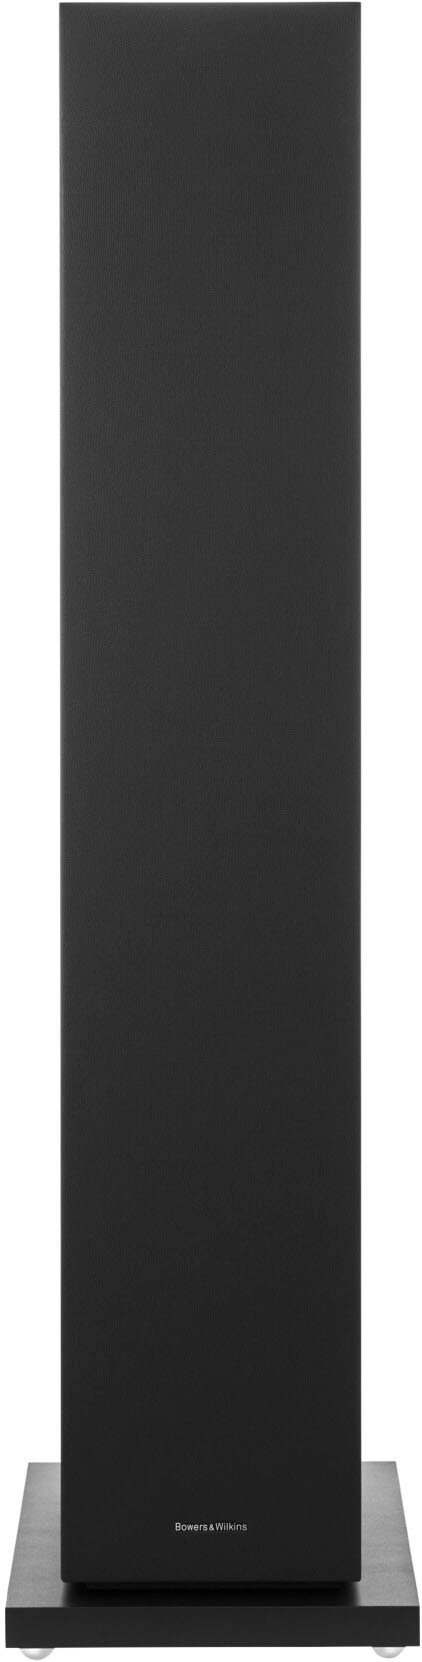 Bowers & Wilkins 600 S3 Series 3-Way Floorstanding Loudspeaker (Each) Black  603S3Black - Best Buy